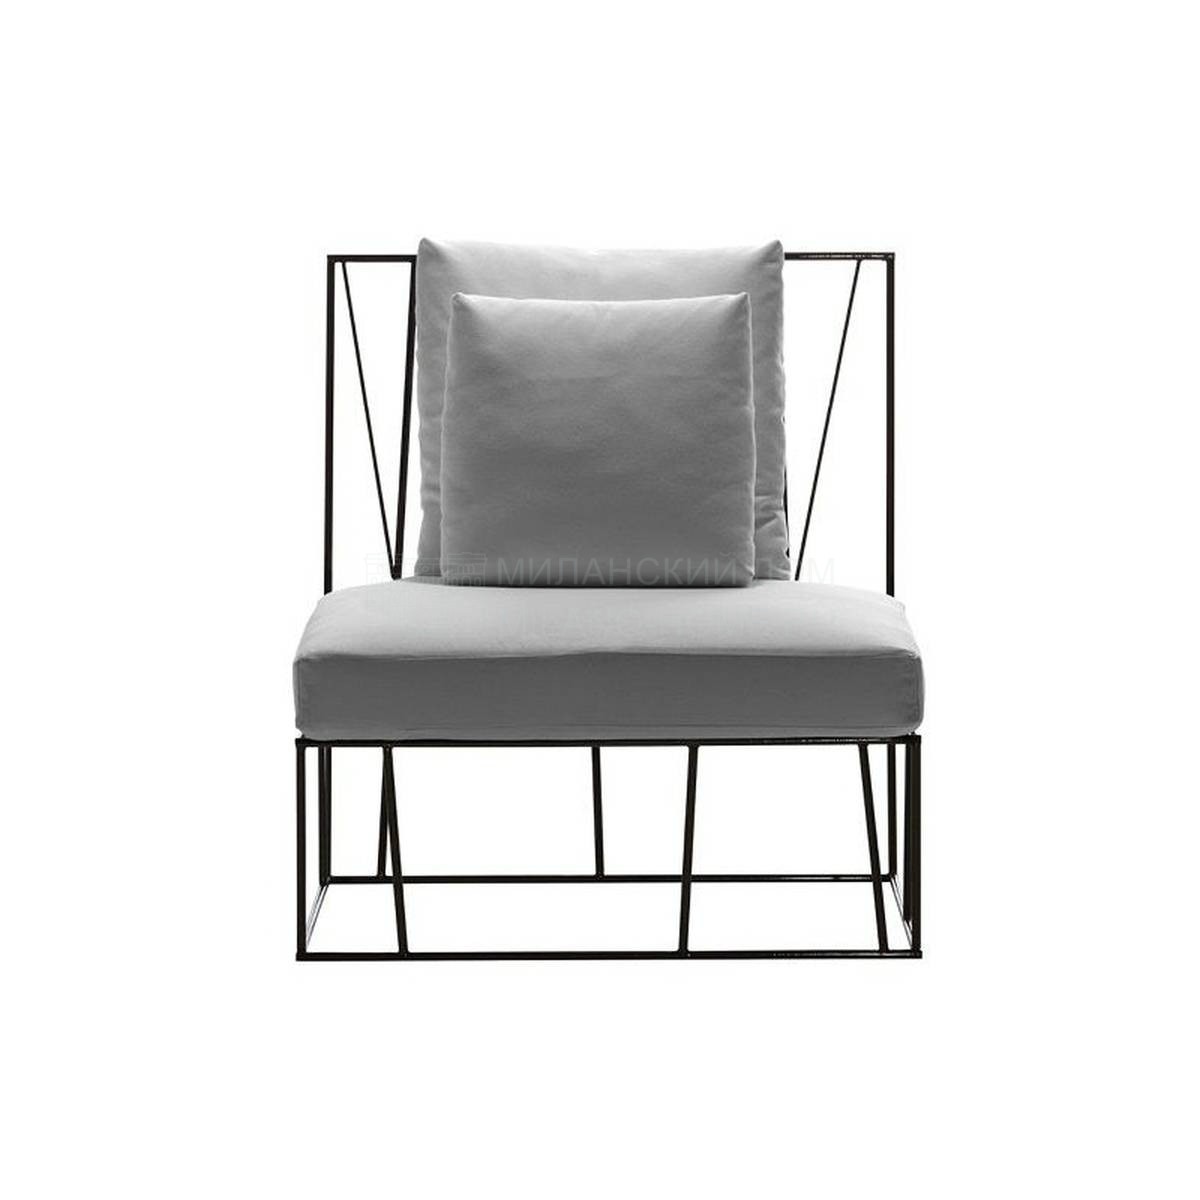 Кресло Herve armchair из Италии фабрики DRIADE